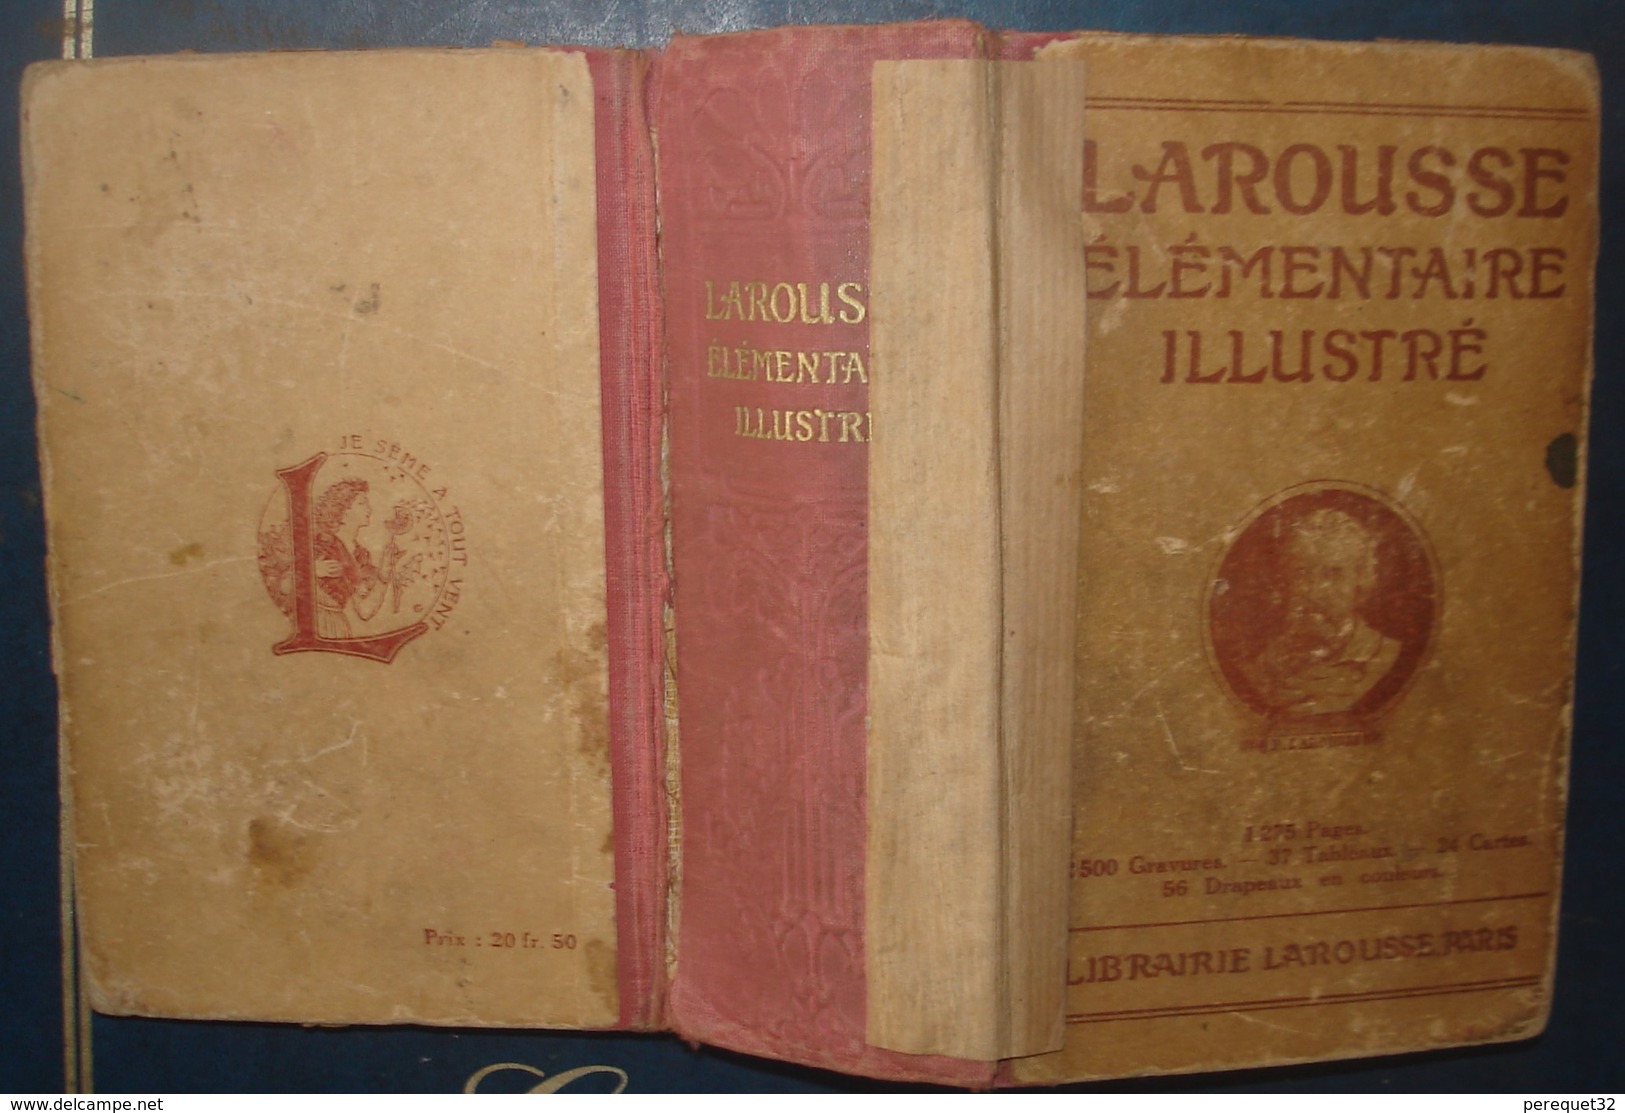 LAROUSSE ELEMENTAIRE ILLUSTRE.1932.1275 Pages - Diccionarios